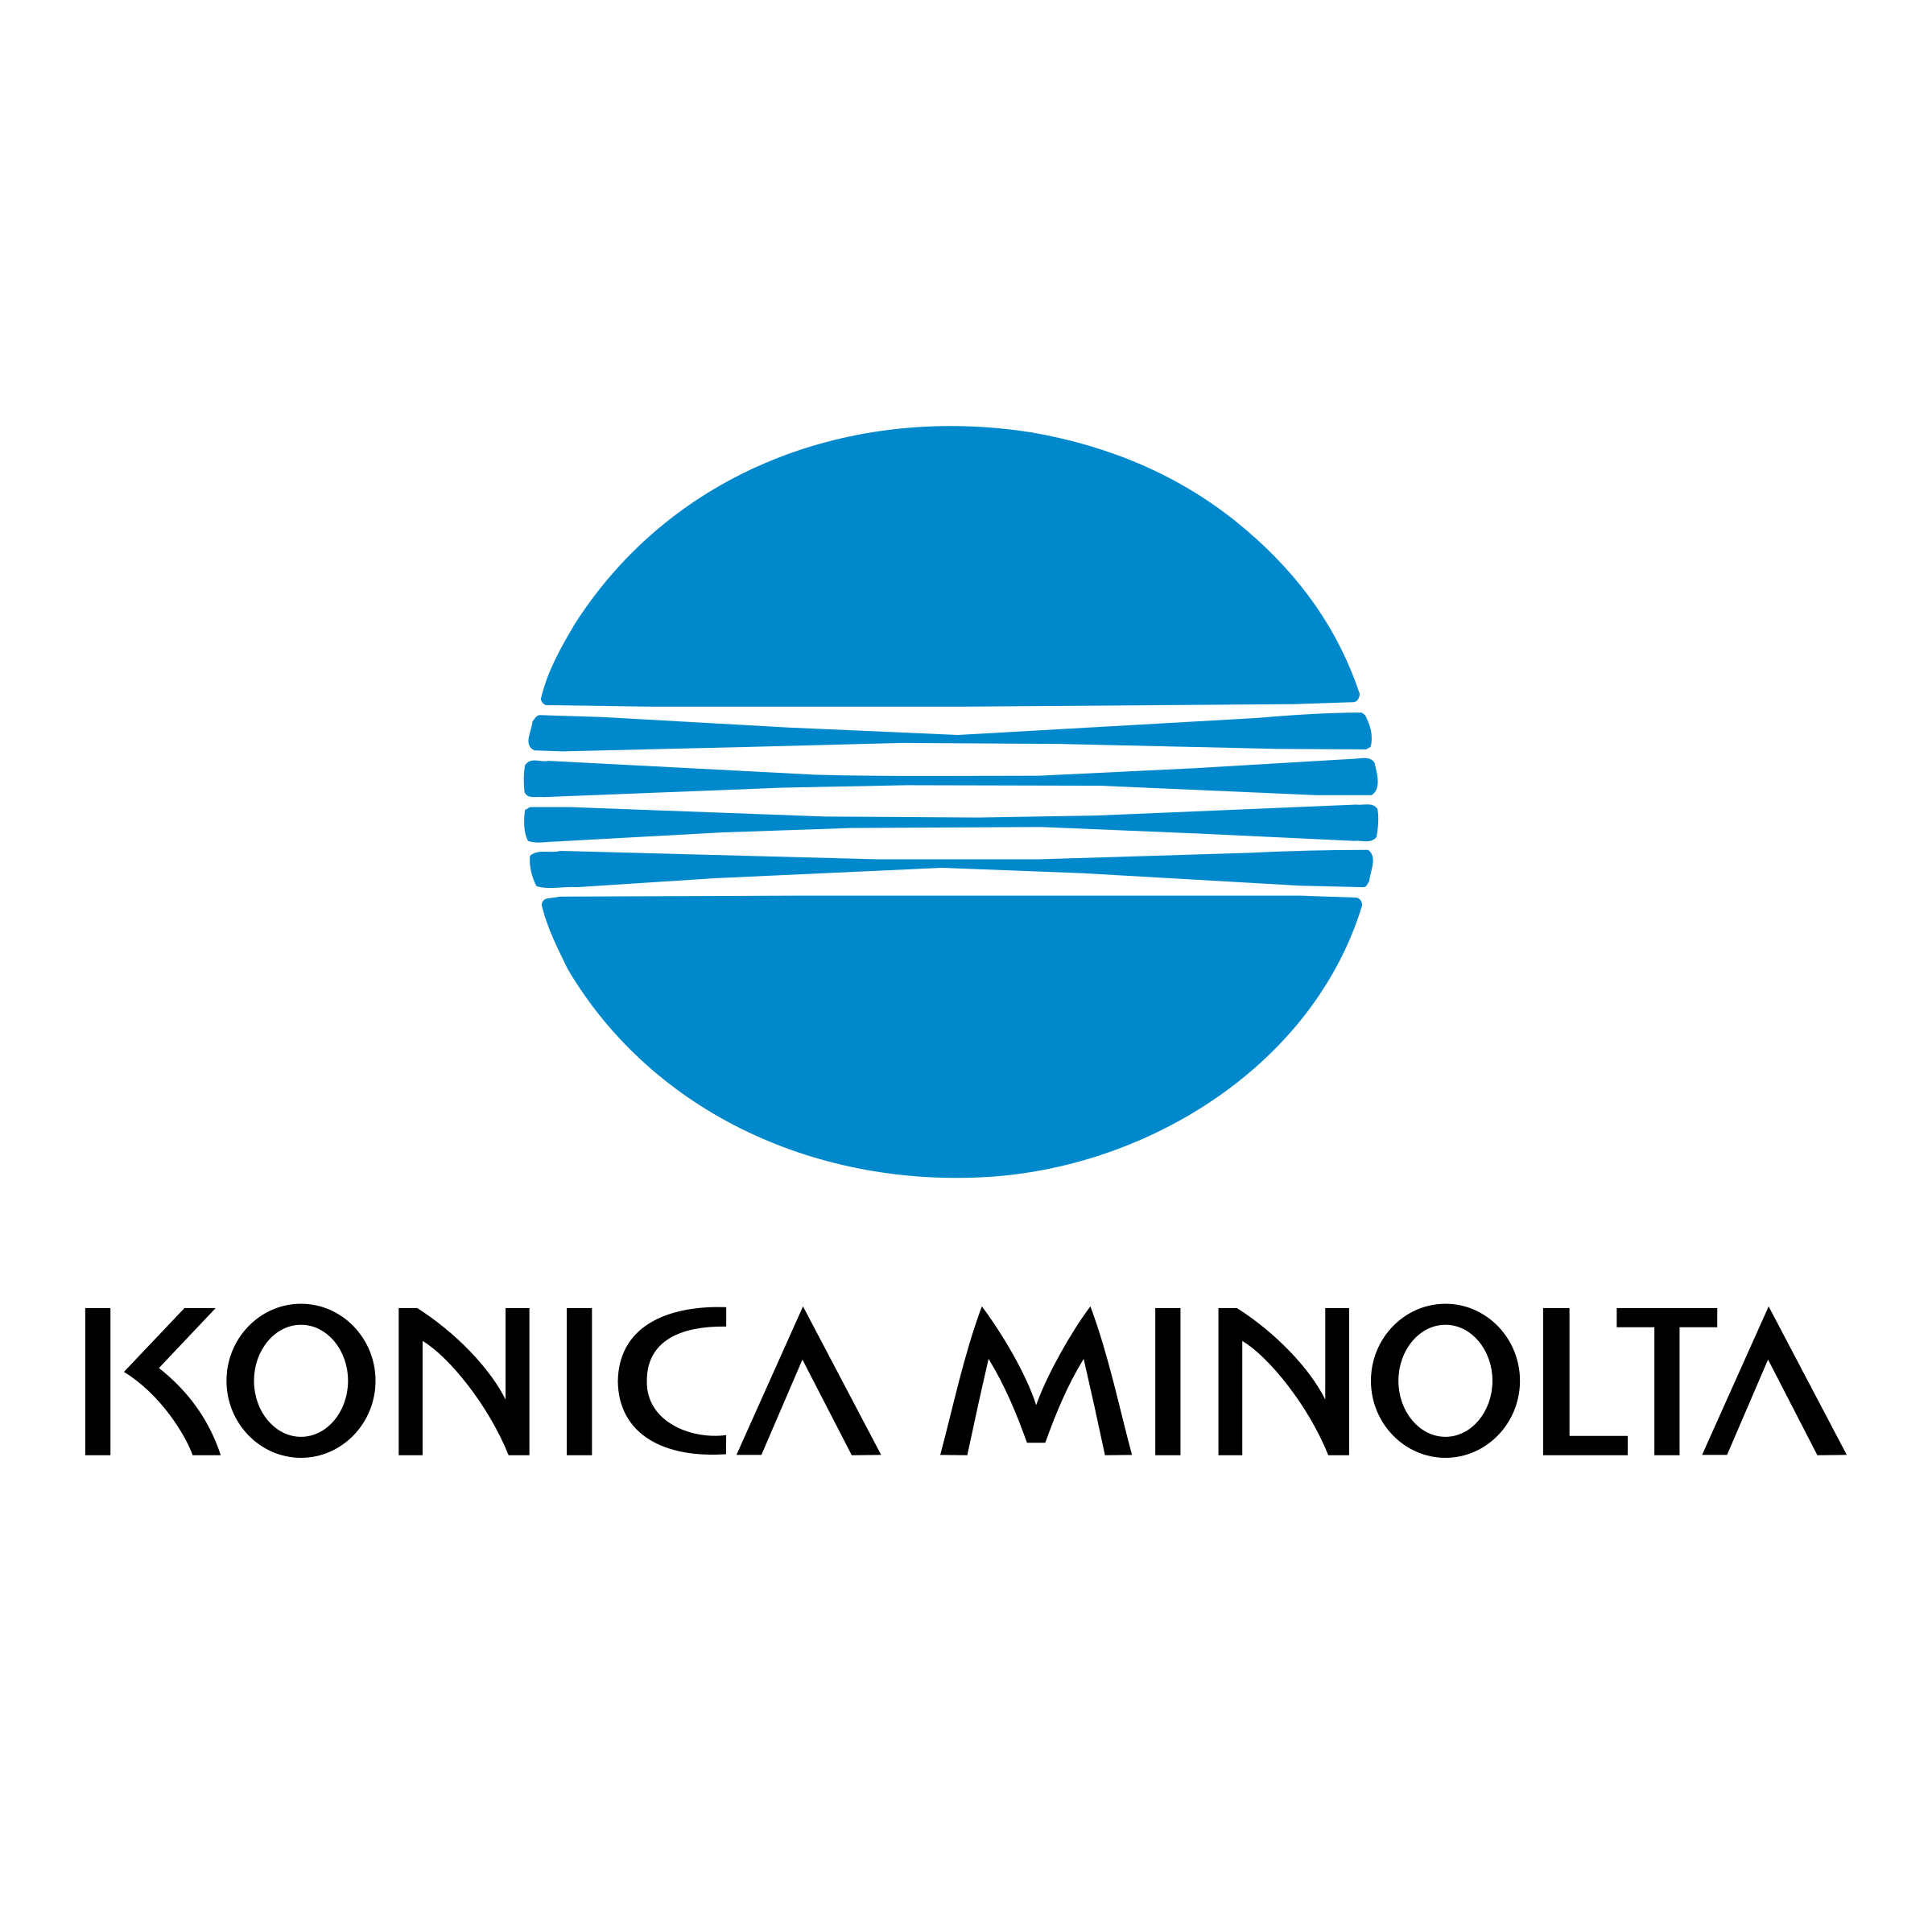 konica-minolta-1-logo-png-transparent.png